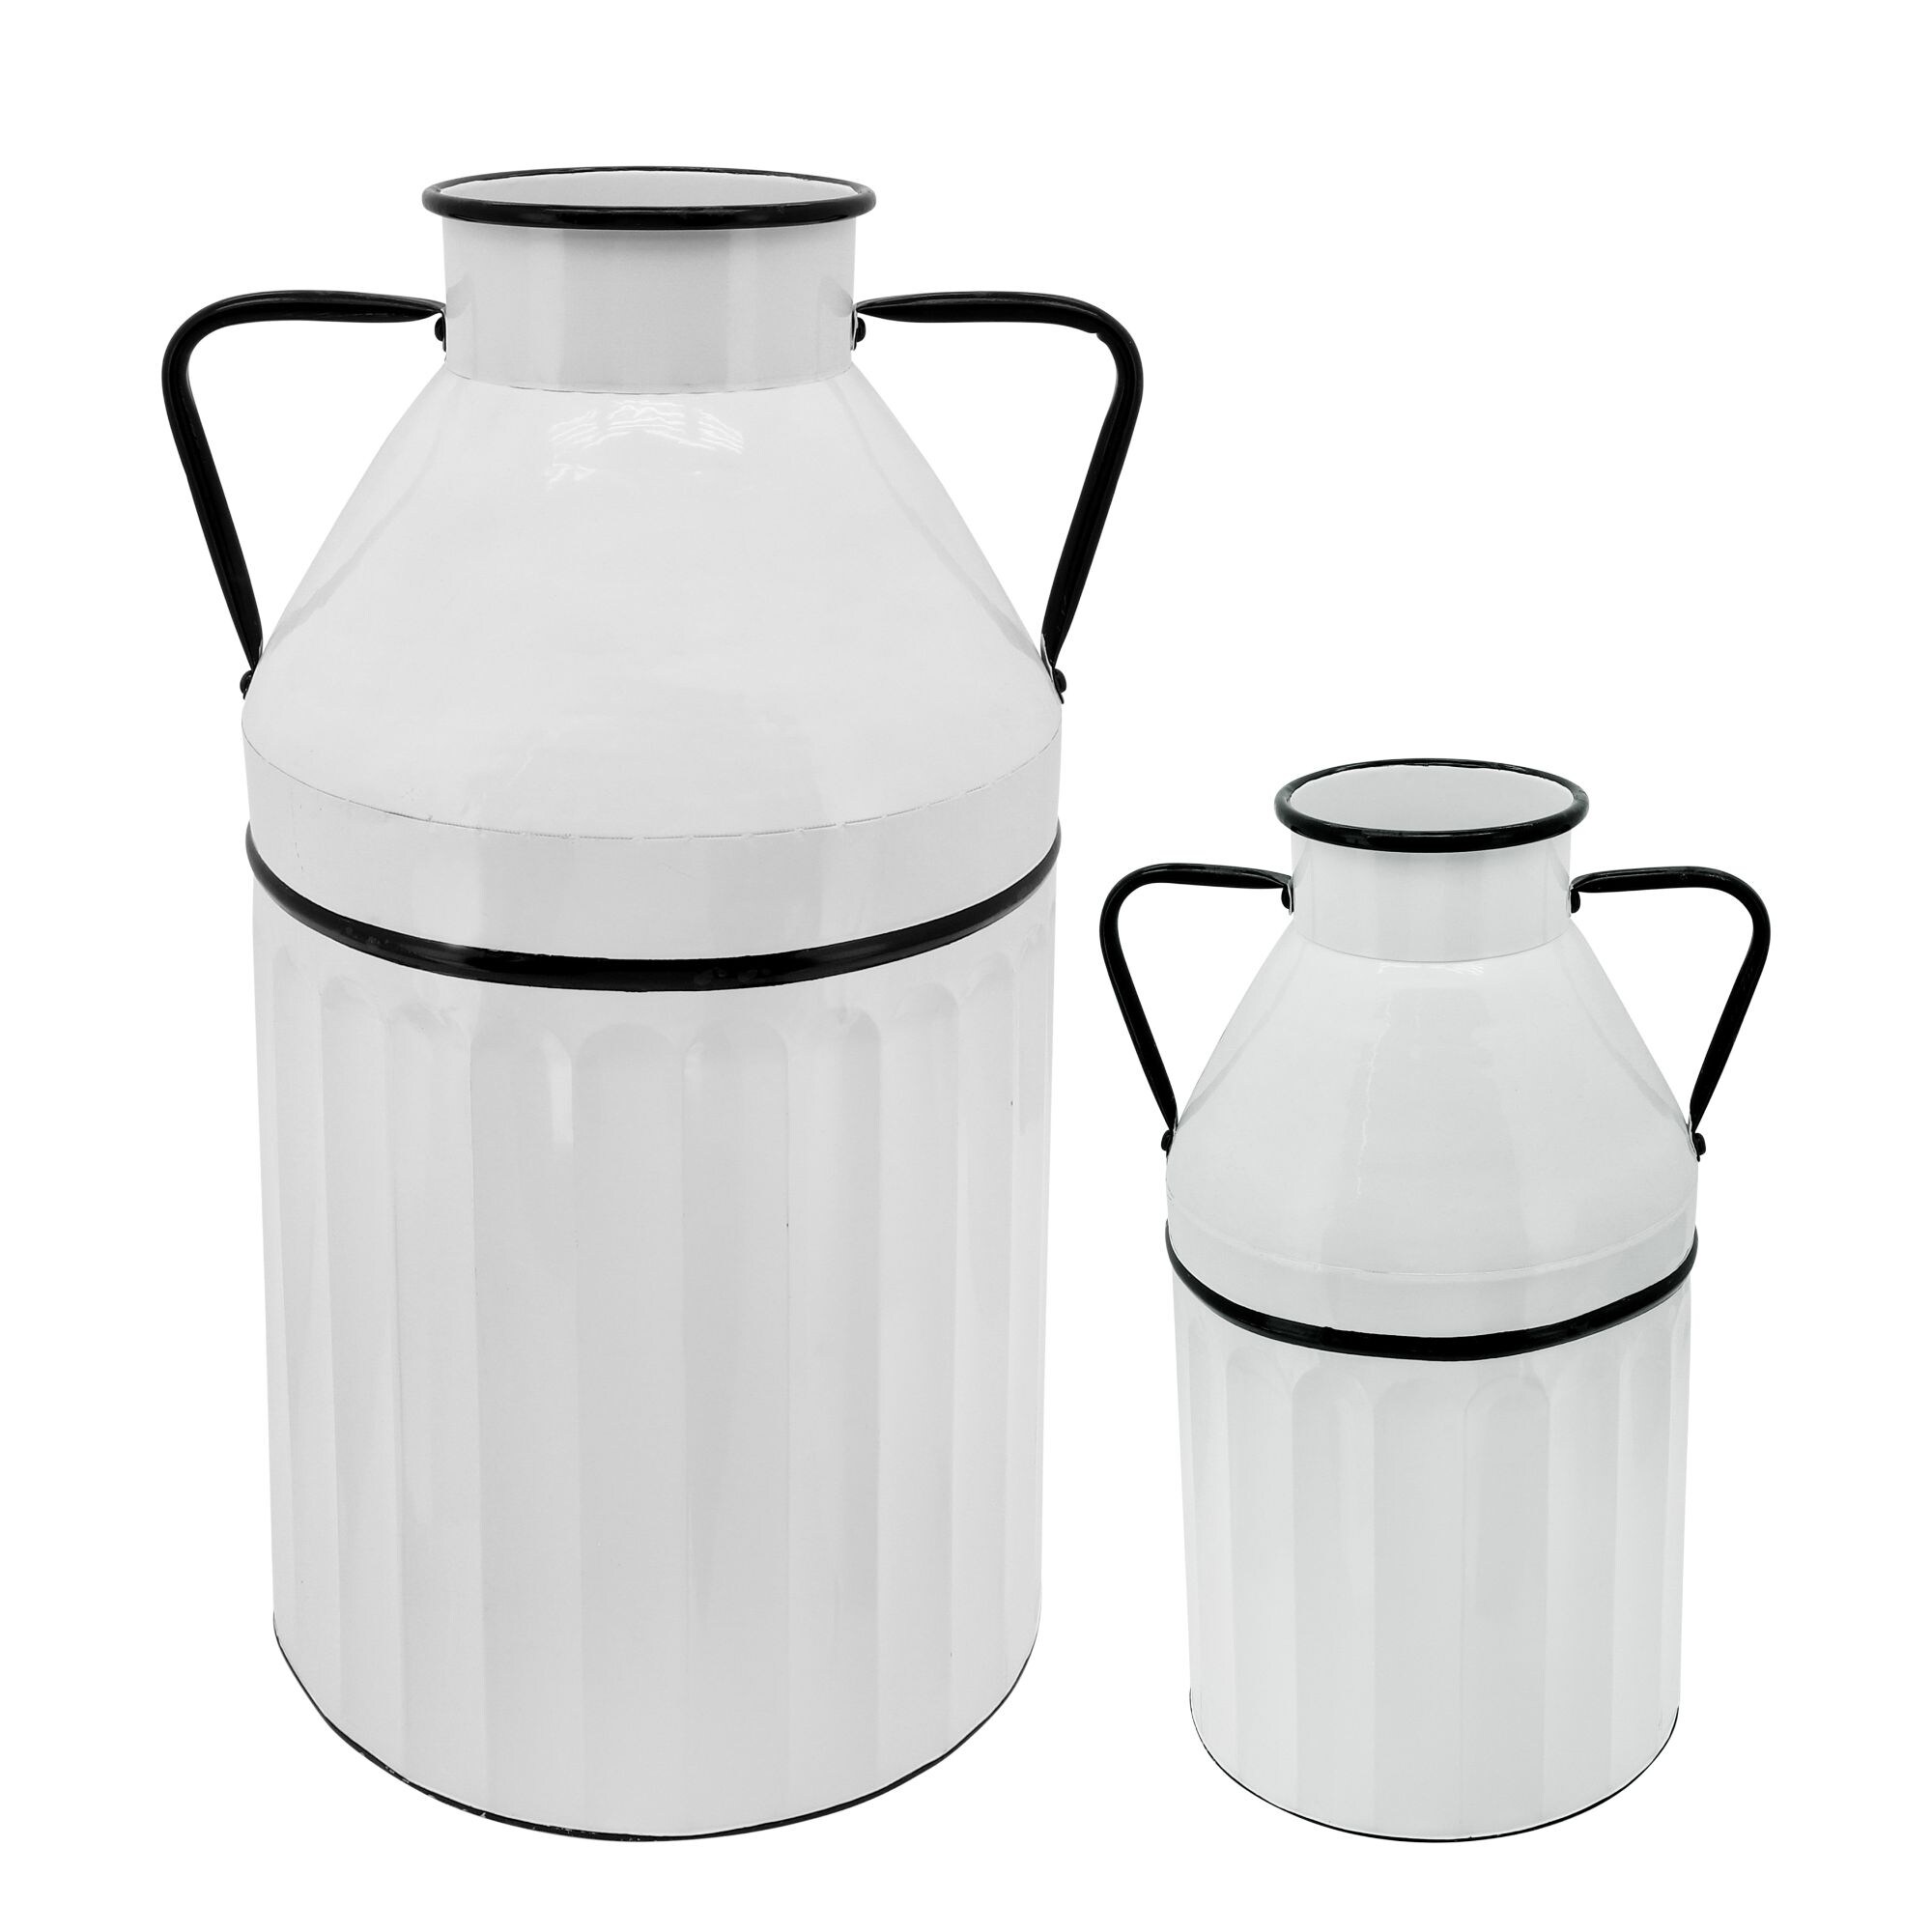 24" White Farmhouse Milk Bucket with Handles